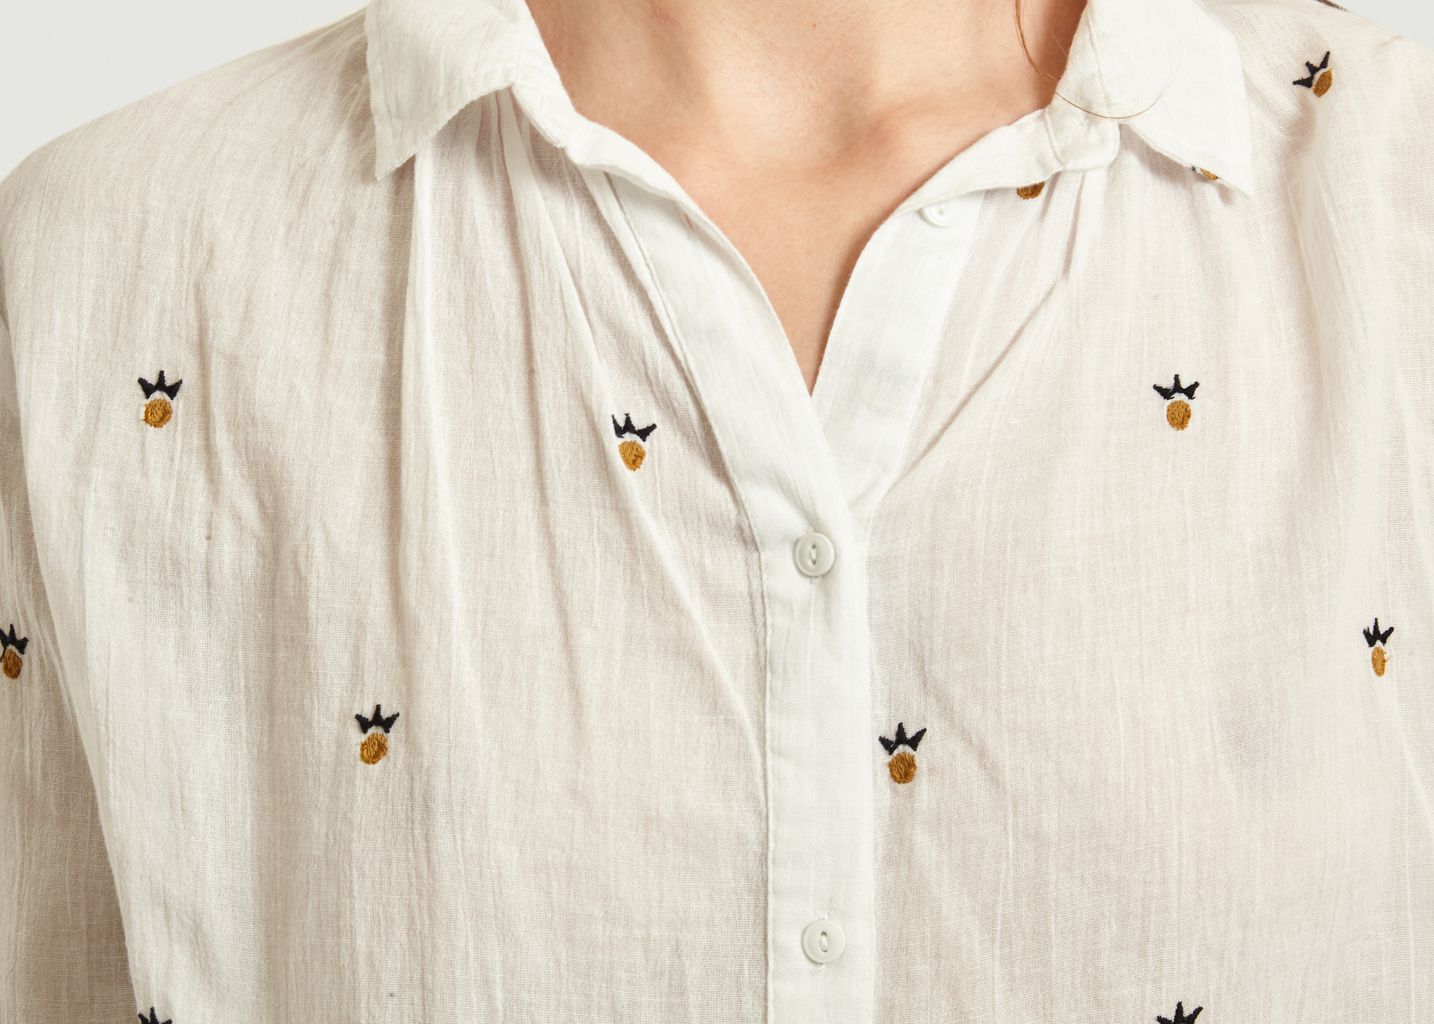 Onawa Pineapple Pattern Cotton Shirt - Tinsels